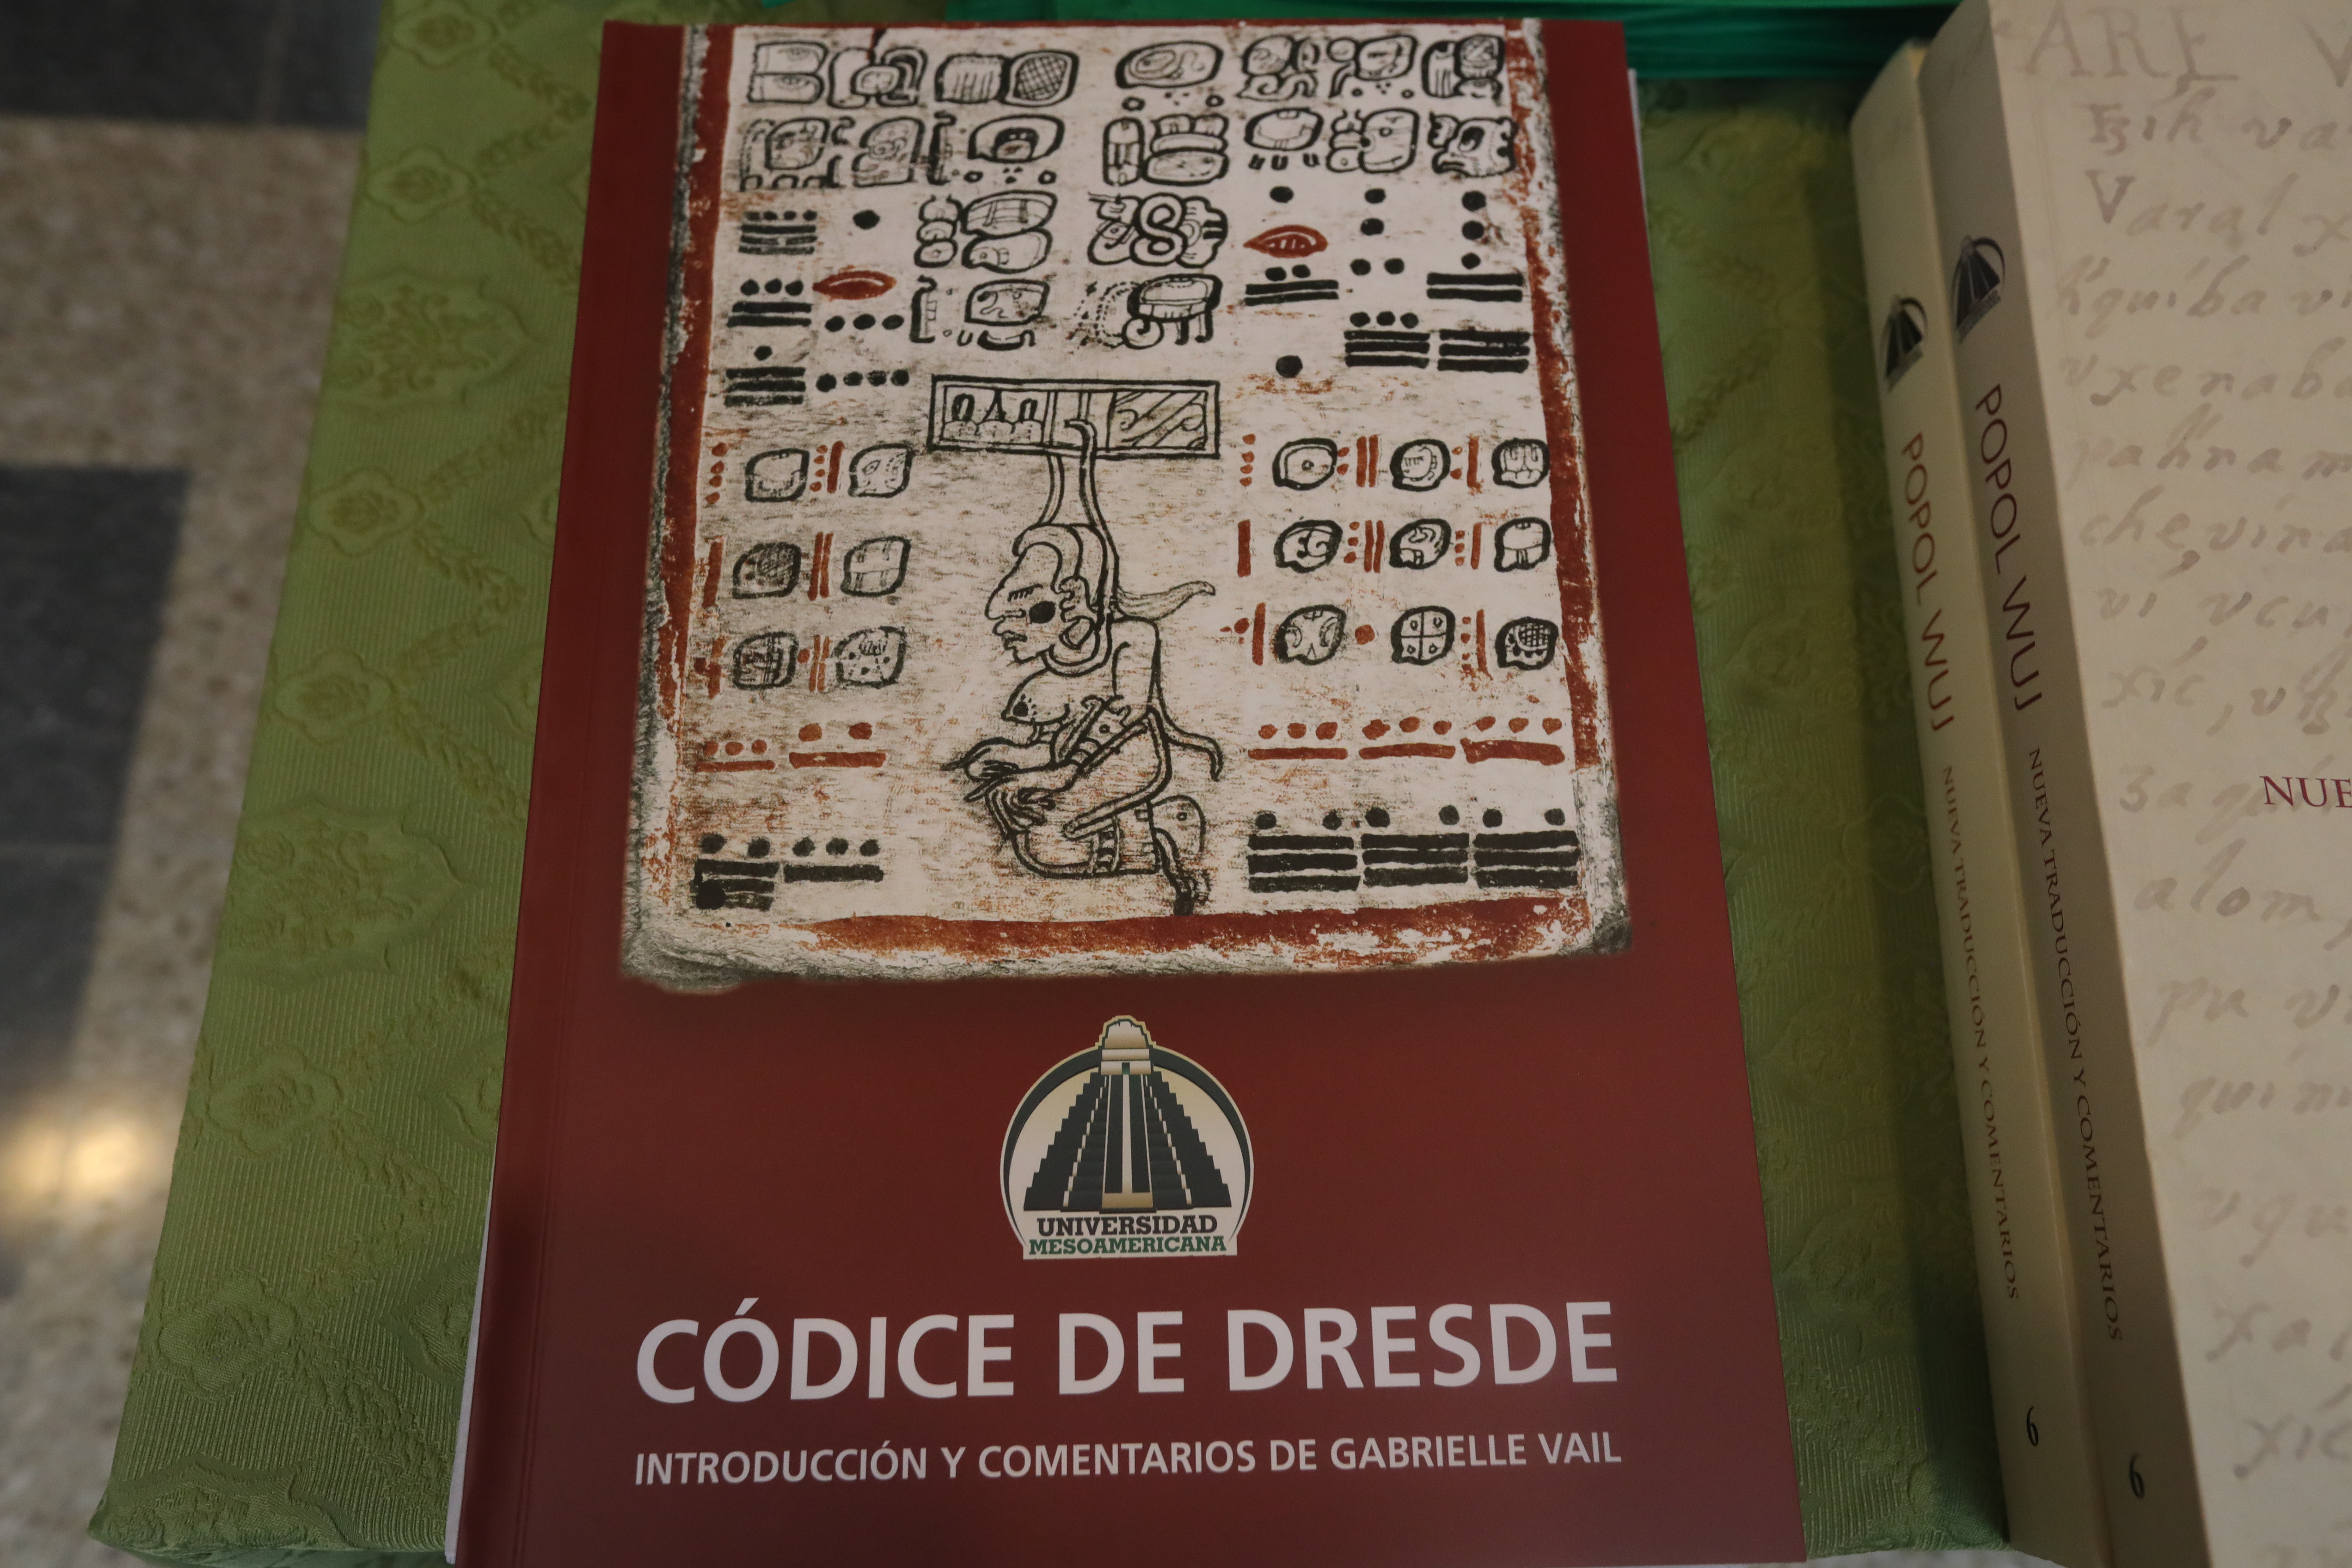 La presentación del Libro "Códice de Dresde" se realizó en el auditorio de la Universidad Mesoamericana. (Foto Prensa Libre: Roberto López).